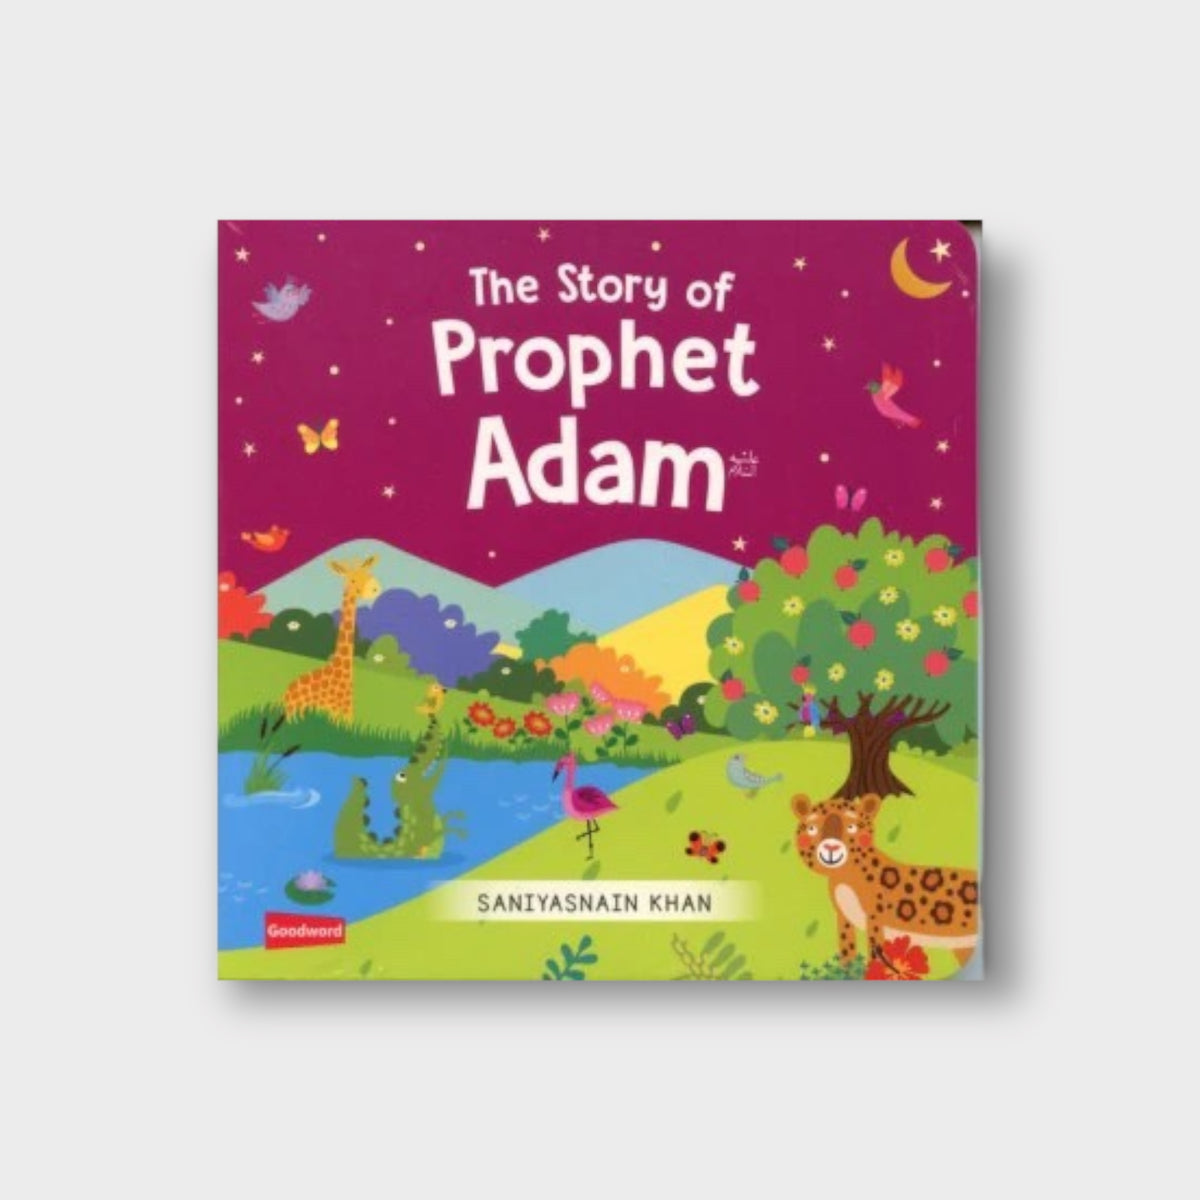 The Story of Prophet Adam